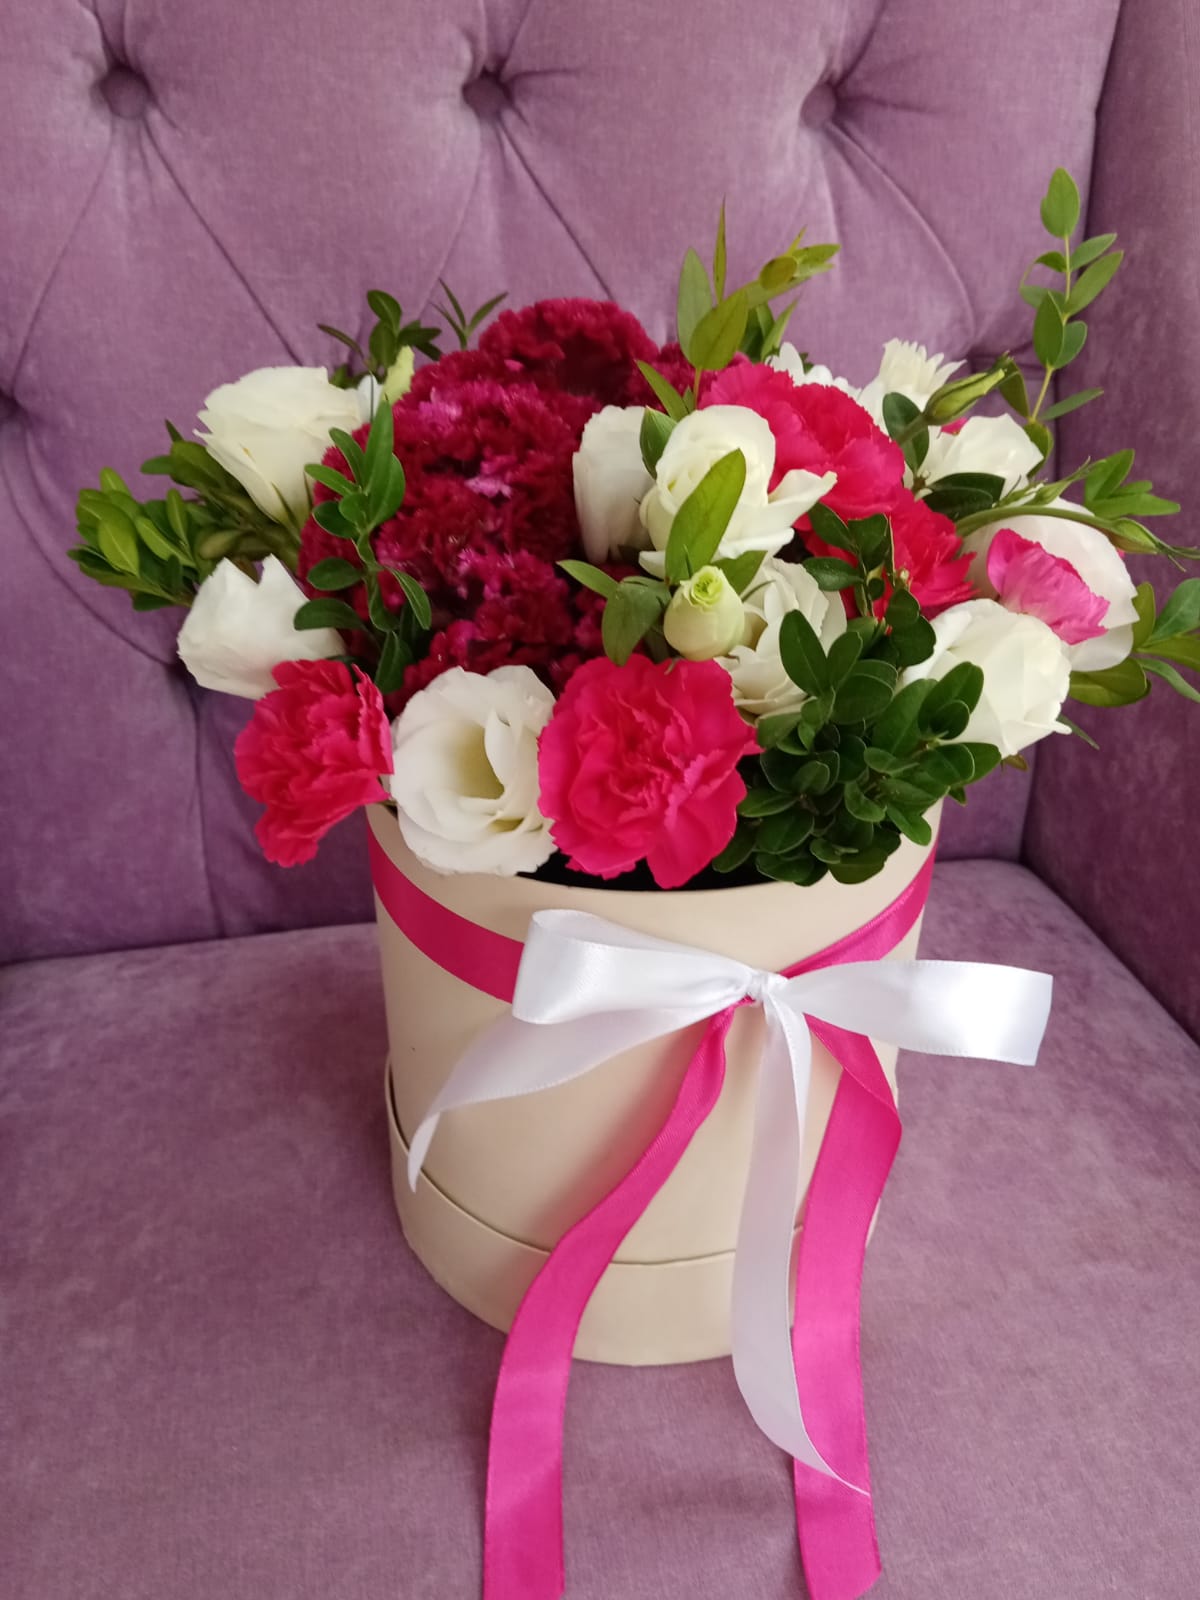 коробка цветов из роз, эустом и кустовой гвоздики